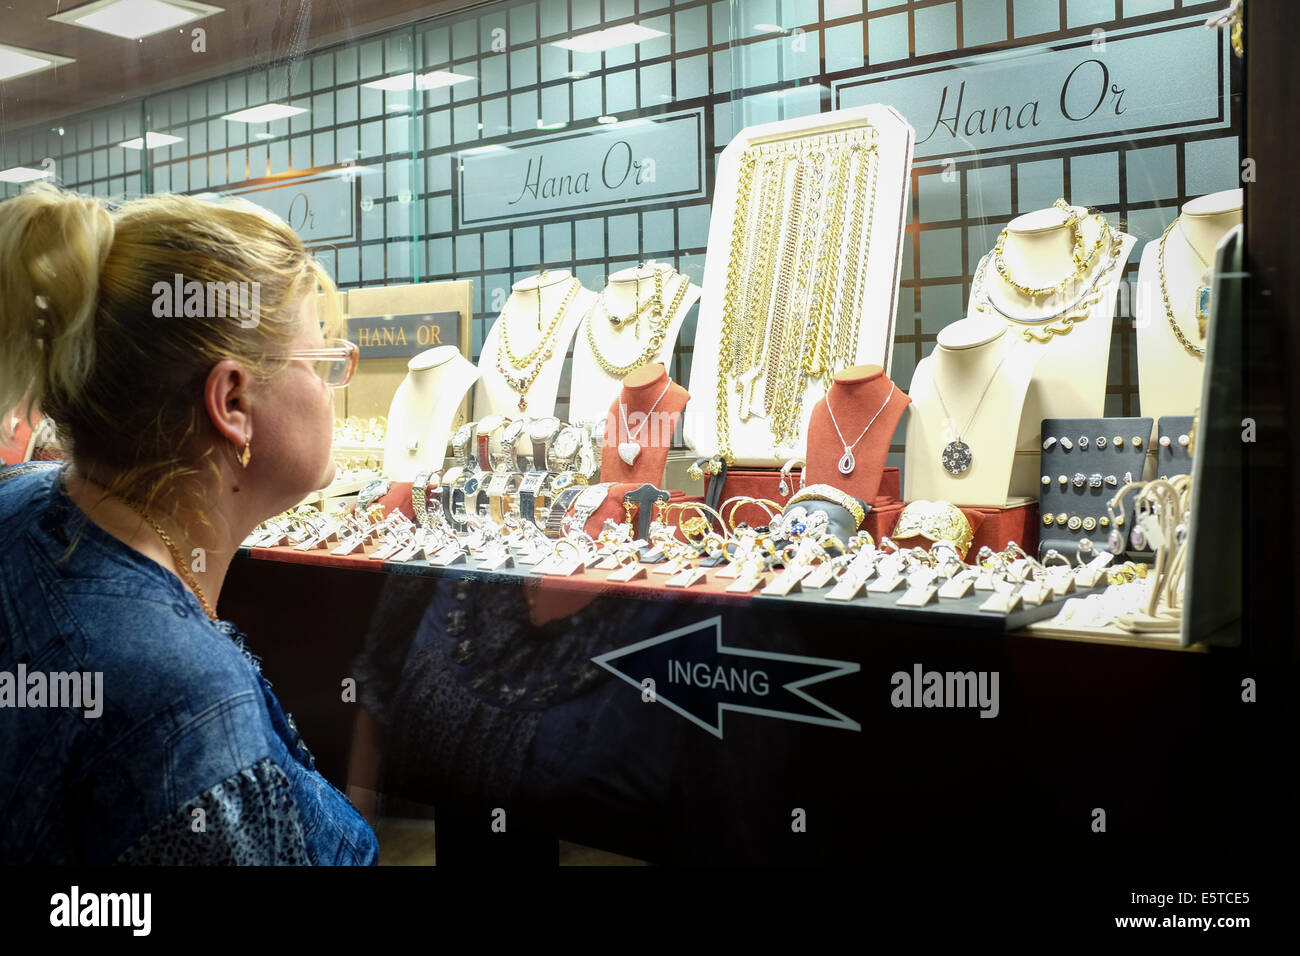 Donna che guarda una finestra negozio gioielli nel quartiere ebraico di Anversa, Belgio Foto Stock